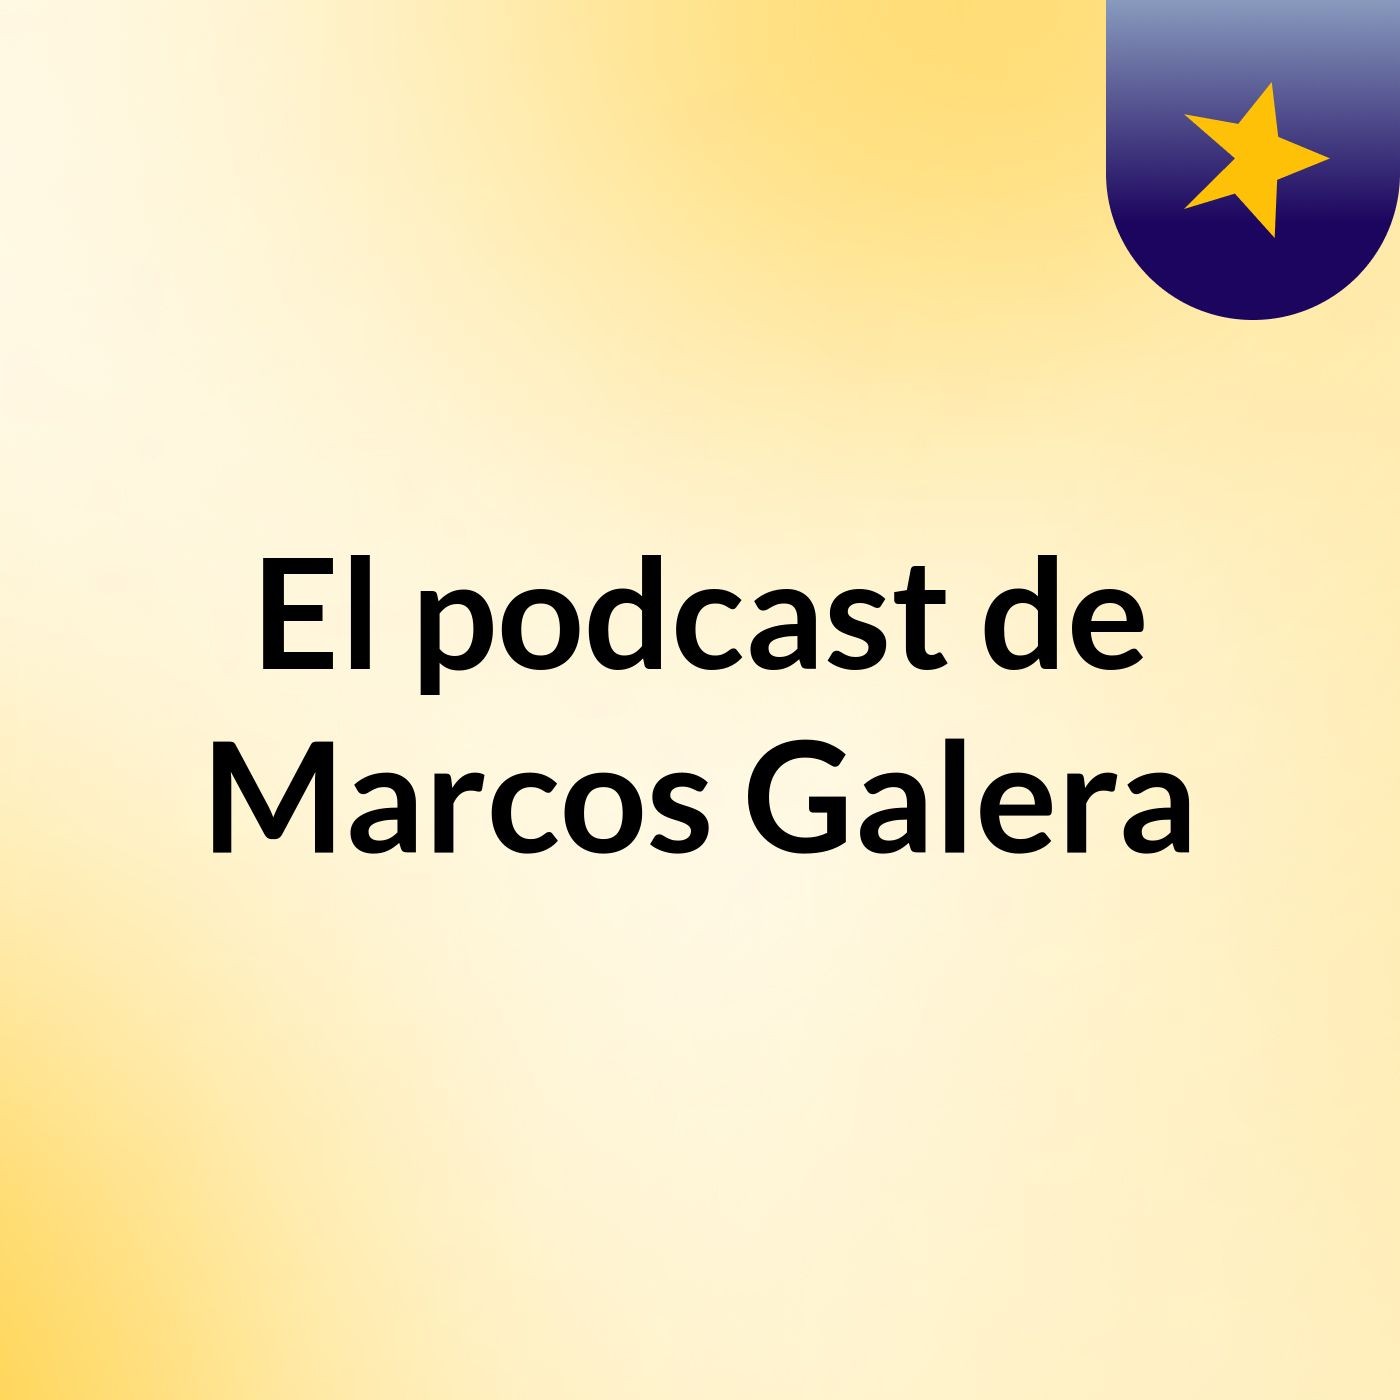 El podcast de Marcos Galera